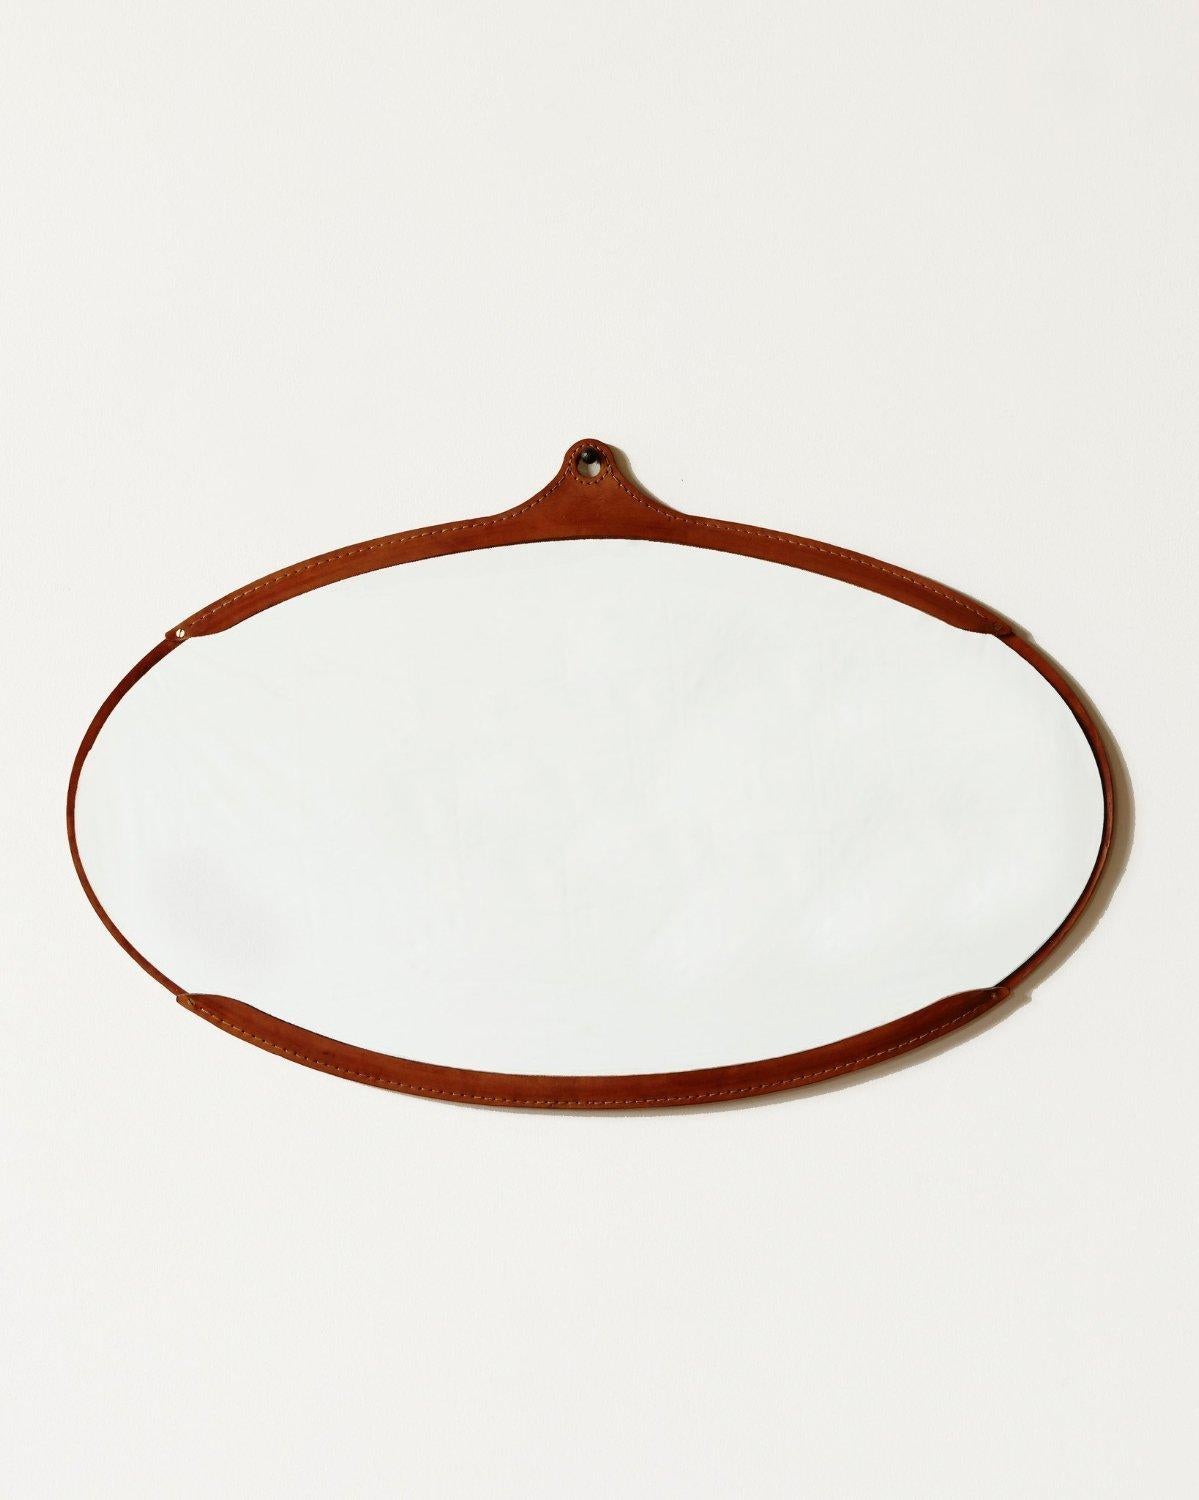 Der breite ovale Fairmount-Spiegel ist ein handgenähter Lederspiegel mit einem Rahmen aus natürlichem, pflanzlich gegerbtem Leder, das mit der Zeit in der Farbe variiert und leicht nachdunkelt. Der Spiegel sitzt im Inneren des Rahmens wie eine